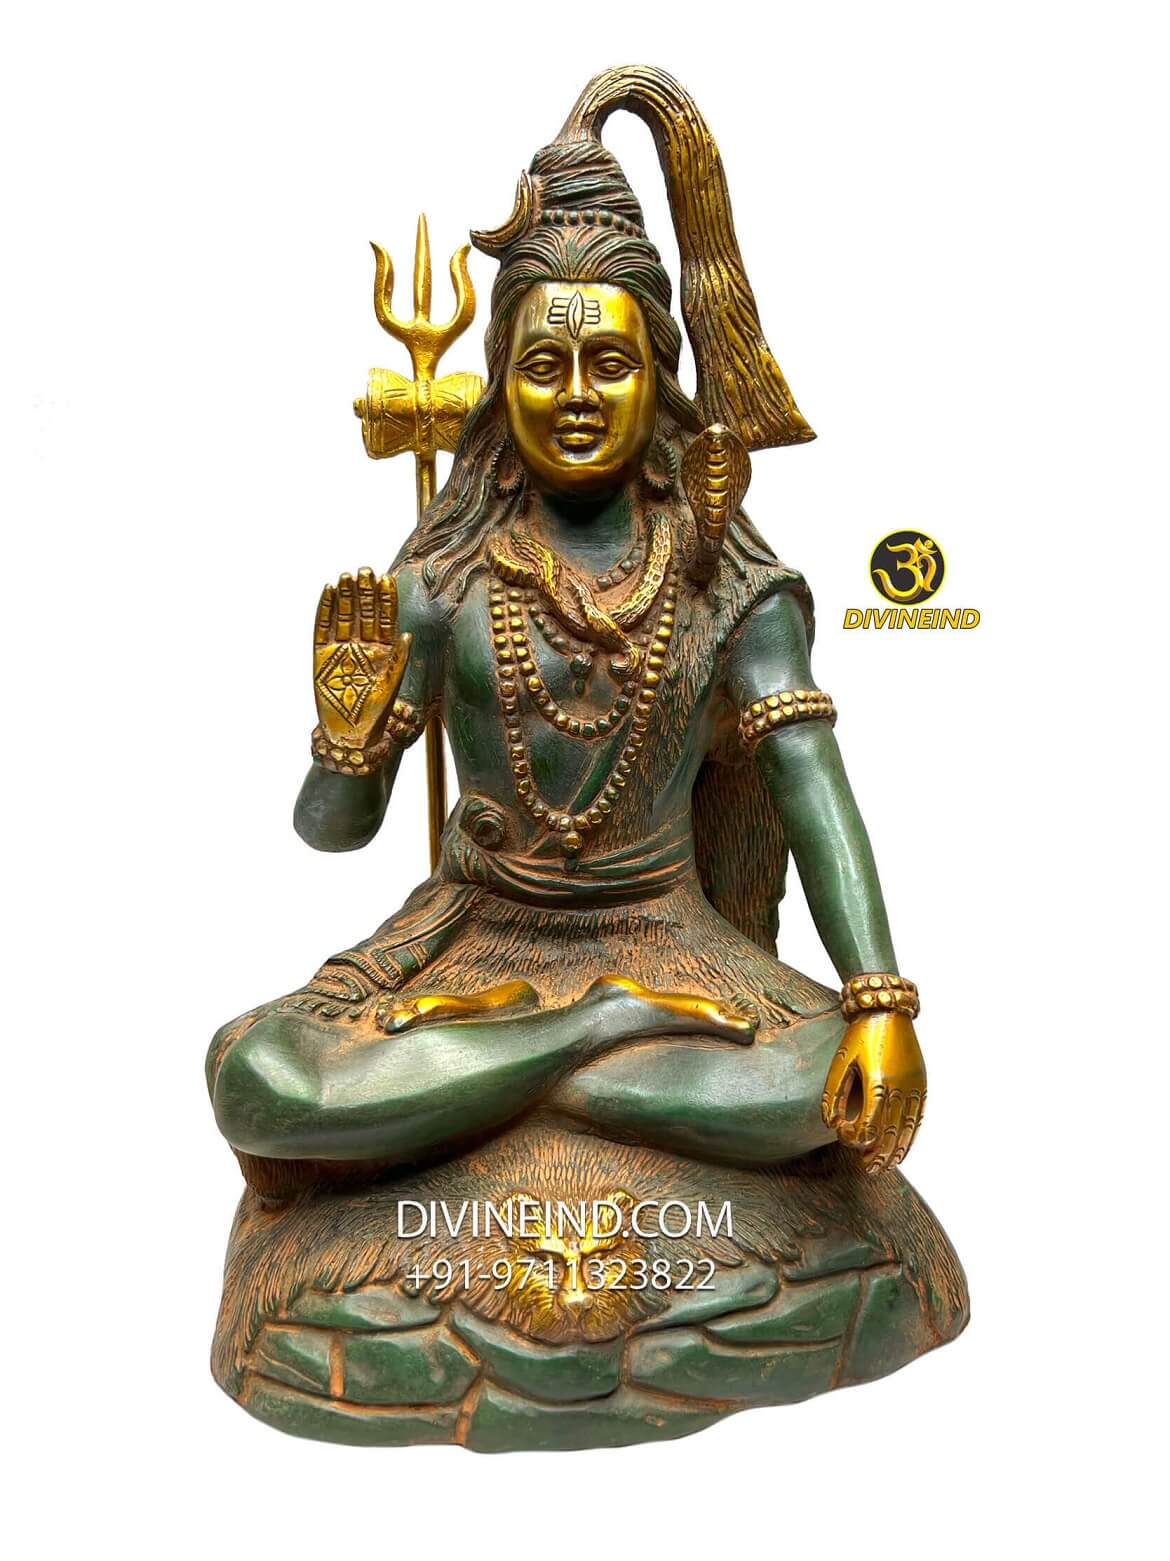 Eine Einführung in Lord Shiva